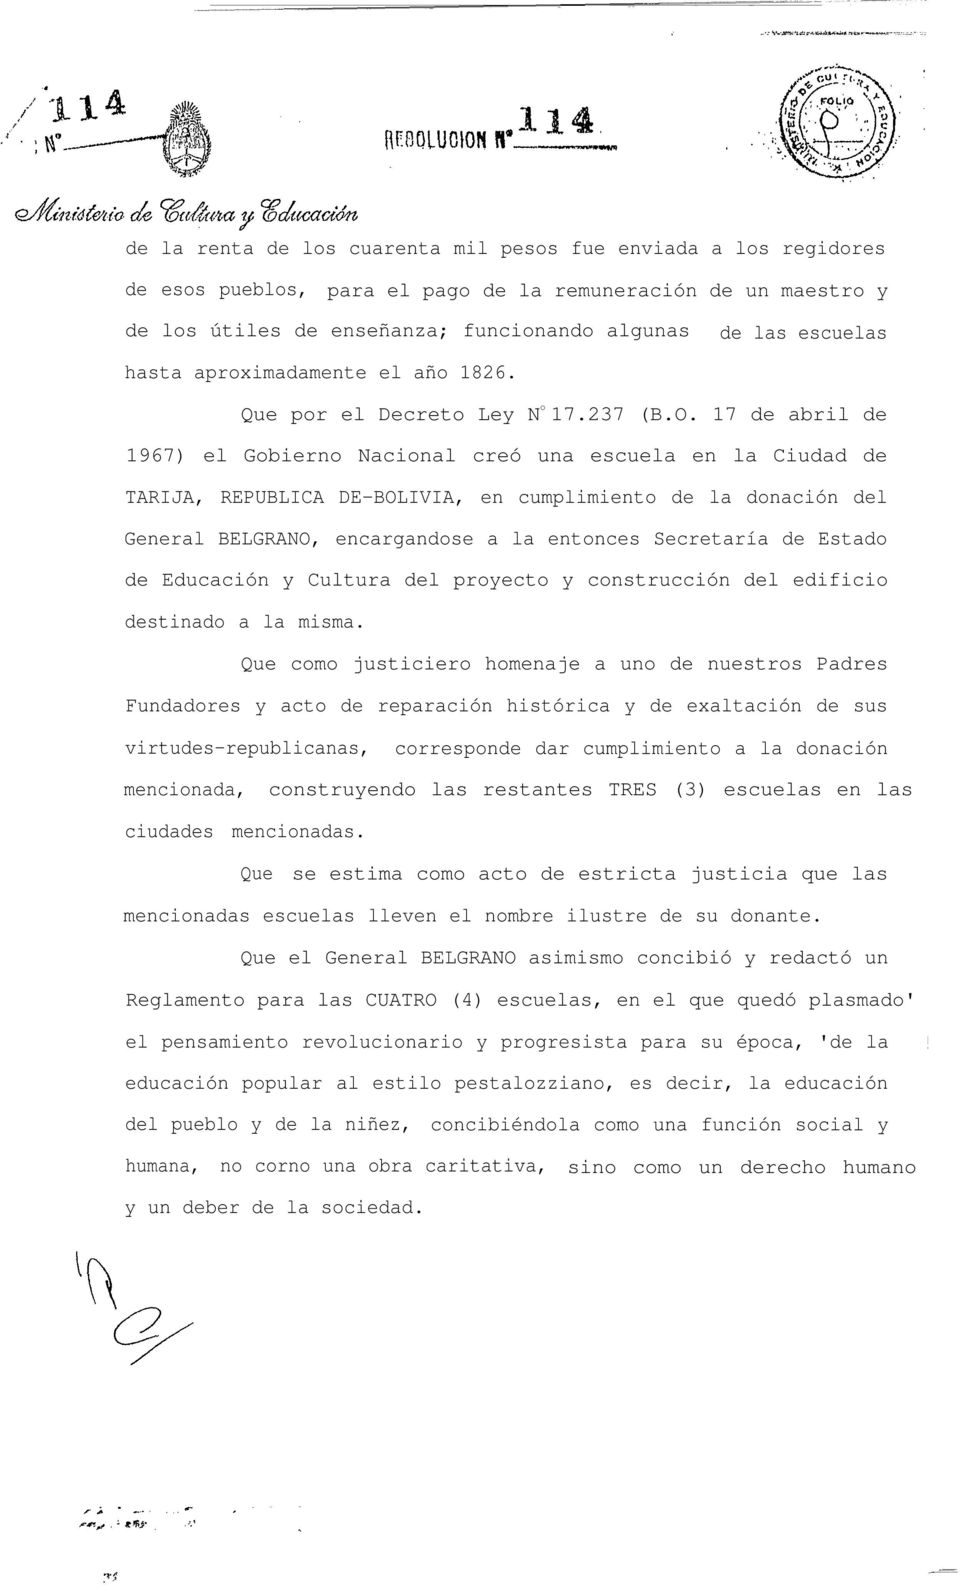 17 de abril de 1967) el Gobierno Nacional creó una escuela en la Ciudad de TARIJA, REPUBLICA DE-BOLIVIA, en cumplimiento de la donación del General BELGRANO, encargandose a la entonces Secretaría de